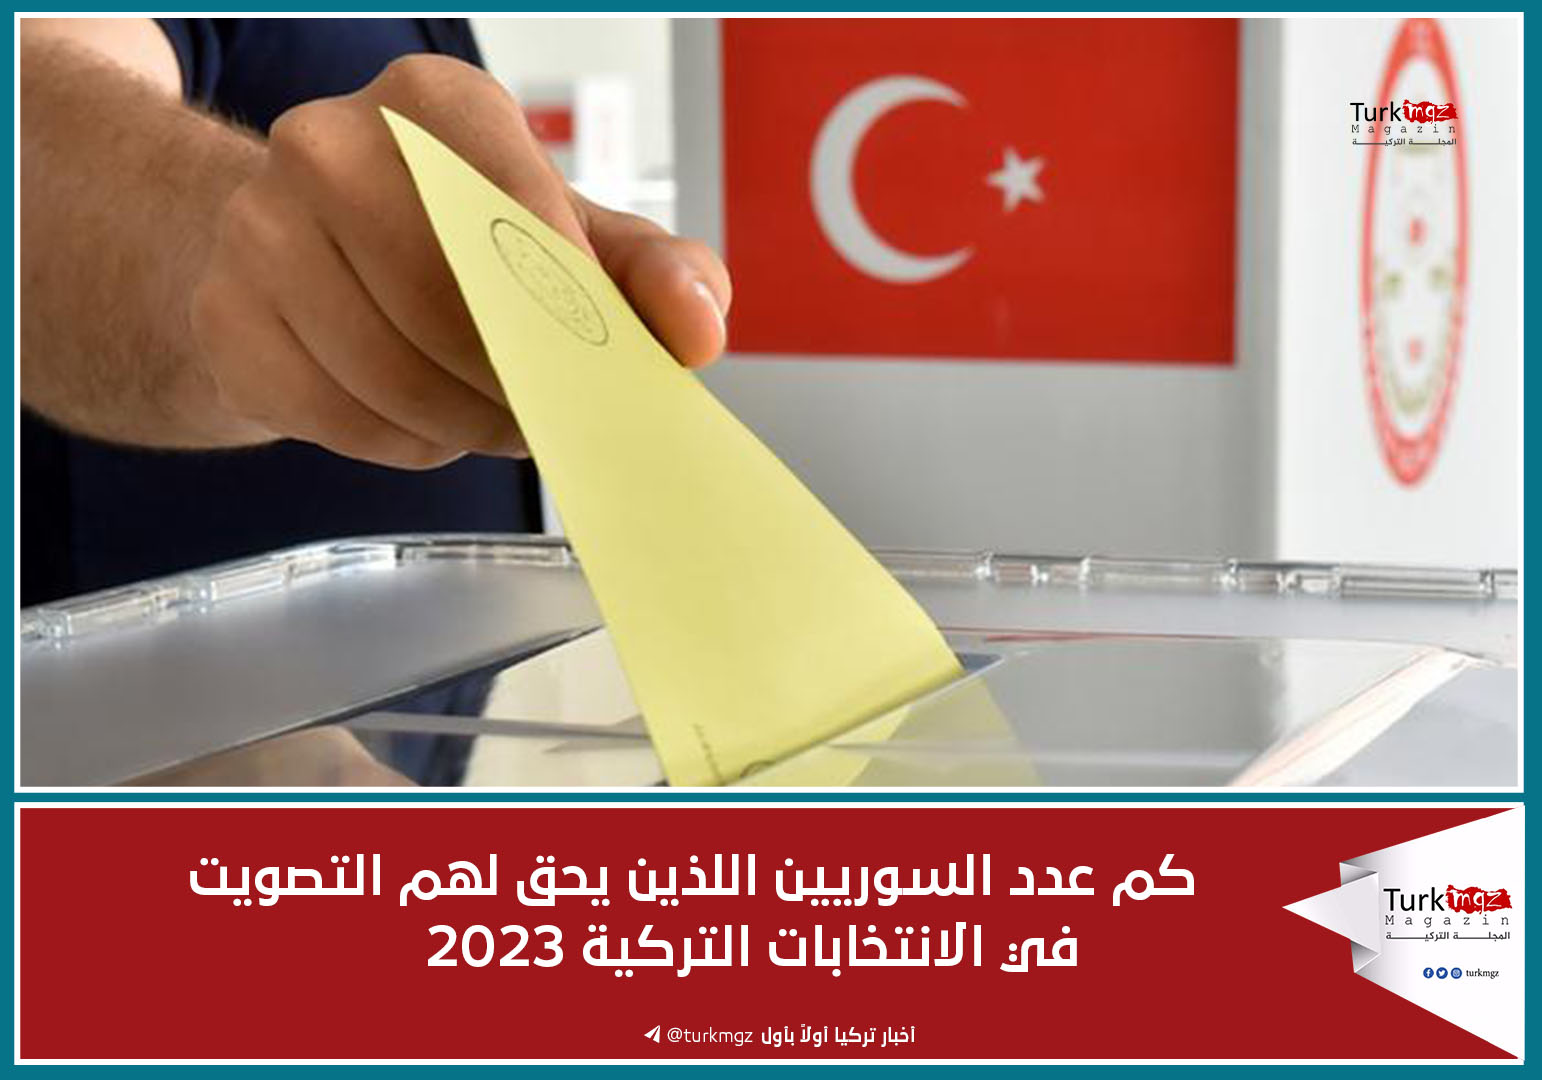 كم عدد السوريين اللذين يحق لهم التصويت في الانتخابات التركية 2023